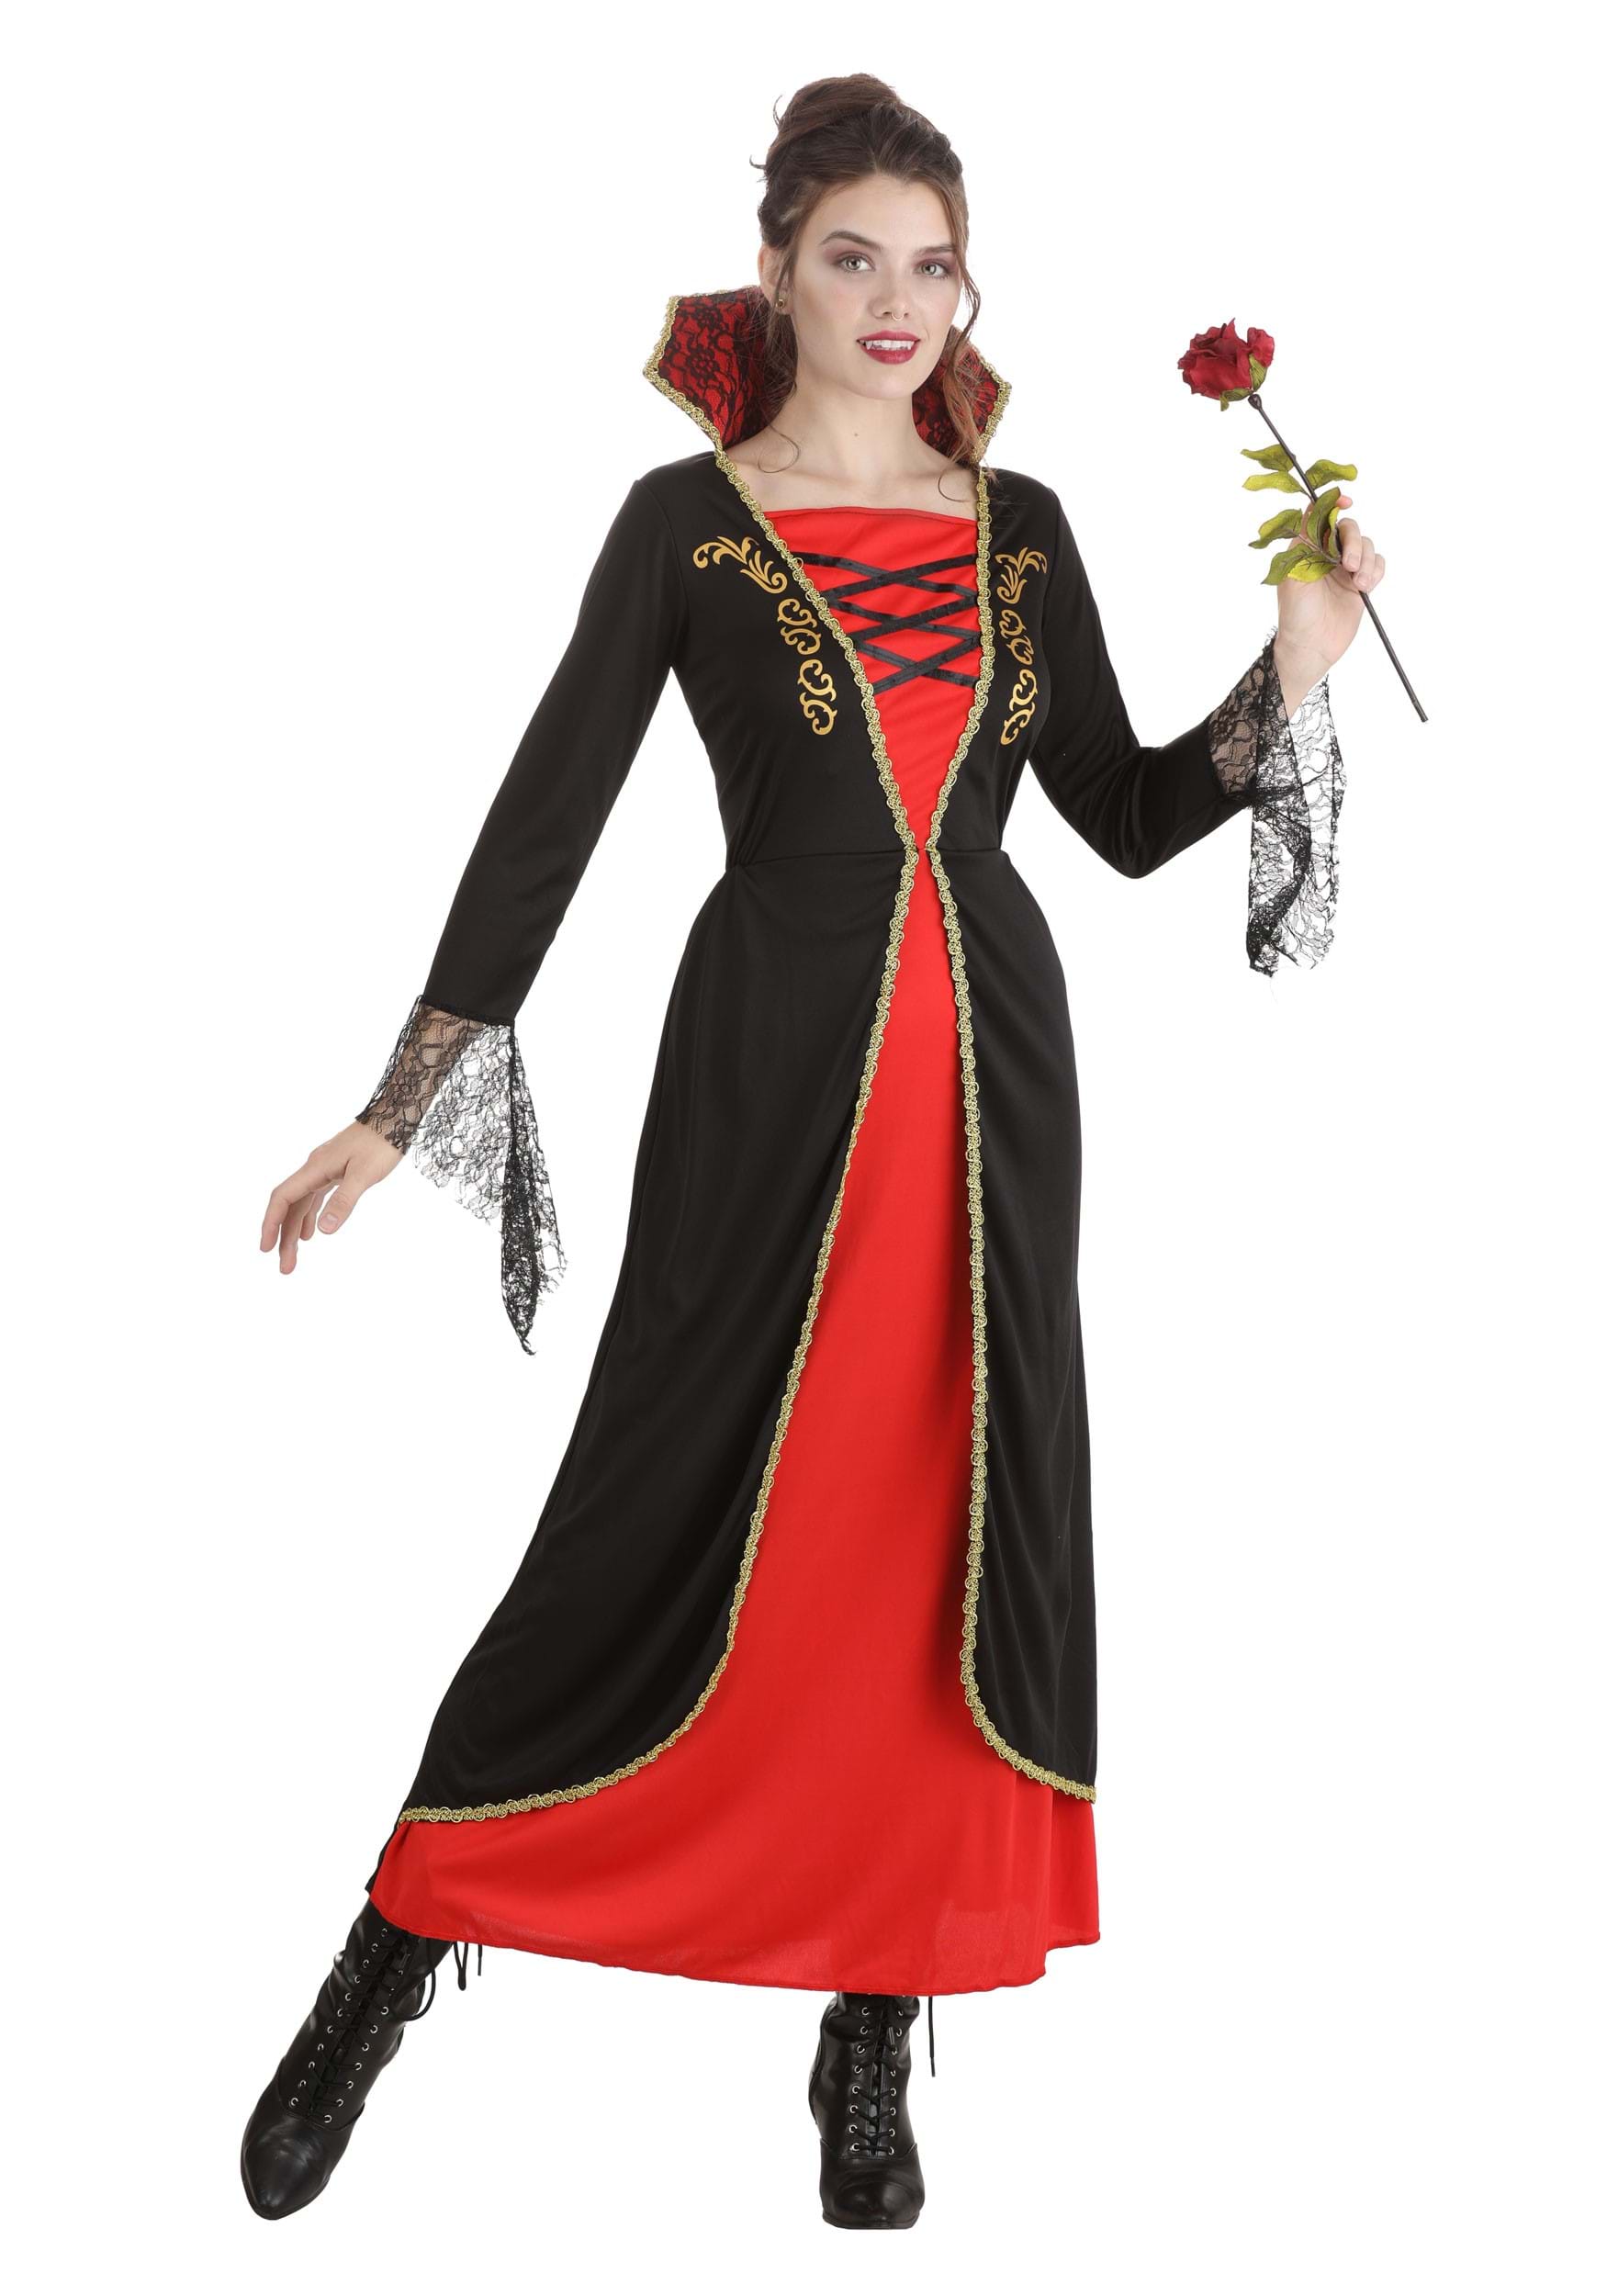 Classic Vampire Costume Dress for Women | Vampire Costumes